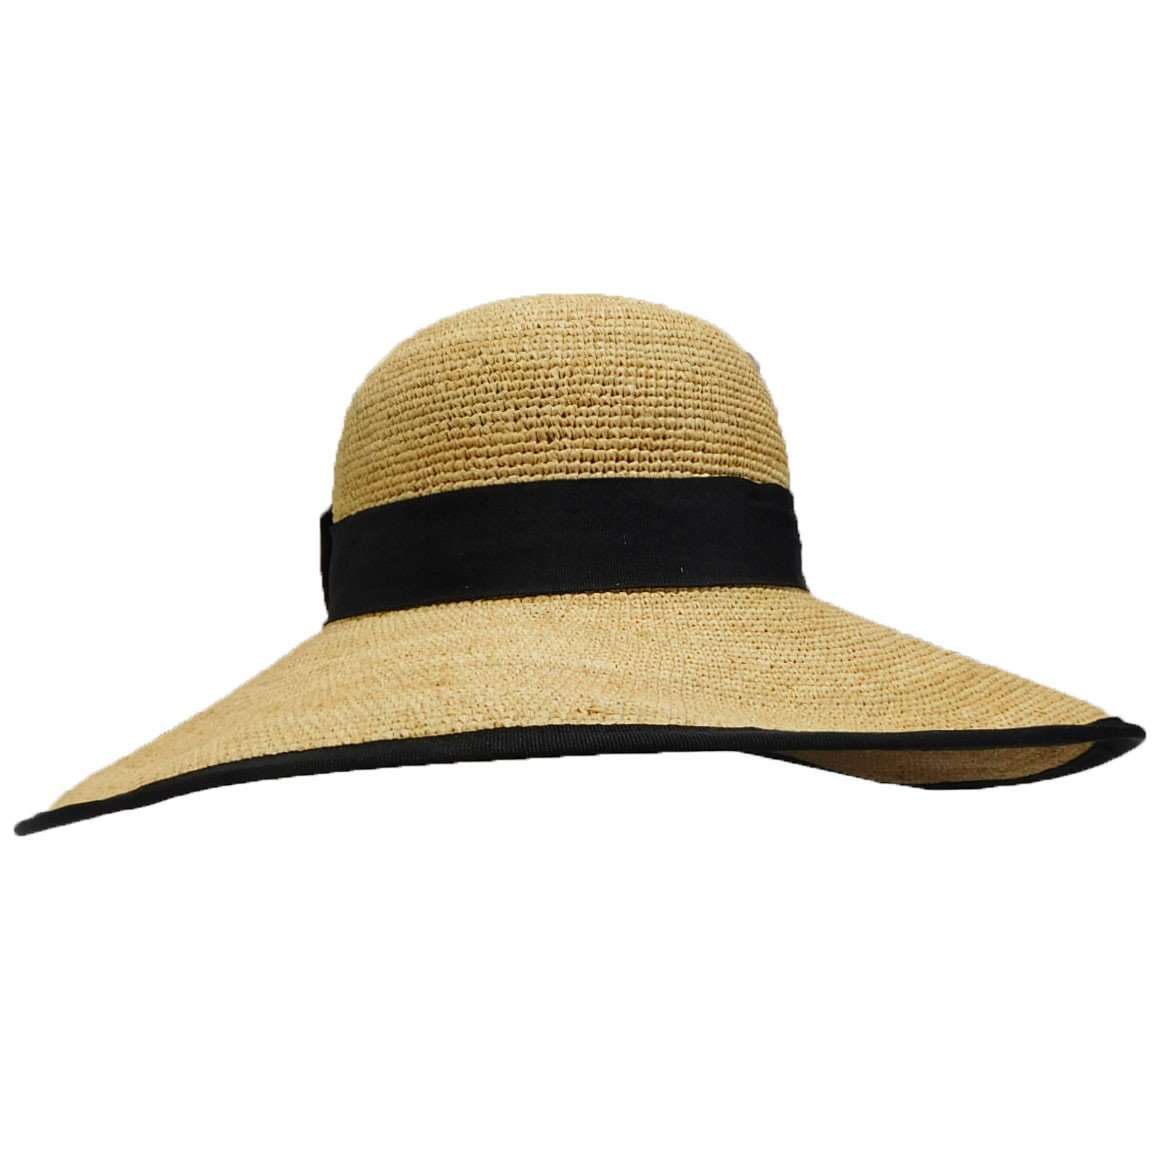 Fine Raffia Sun Hat with Large Bow Floppy Hat Boardwalk Style Hats    